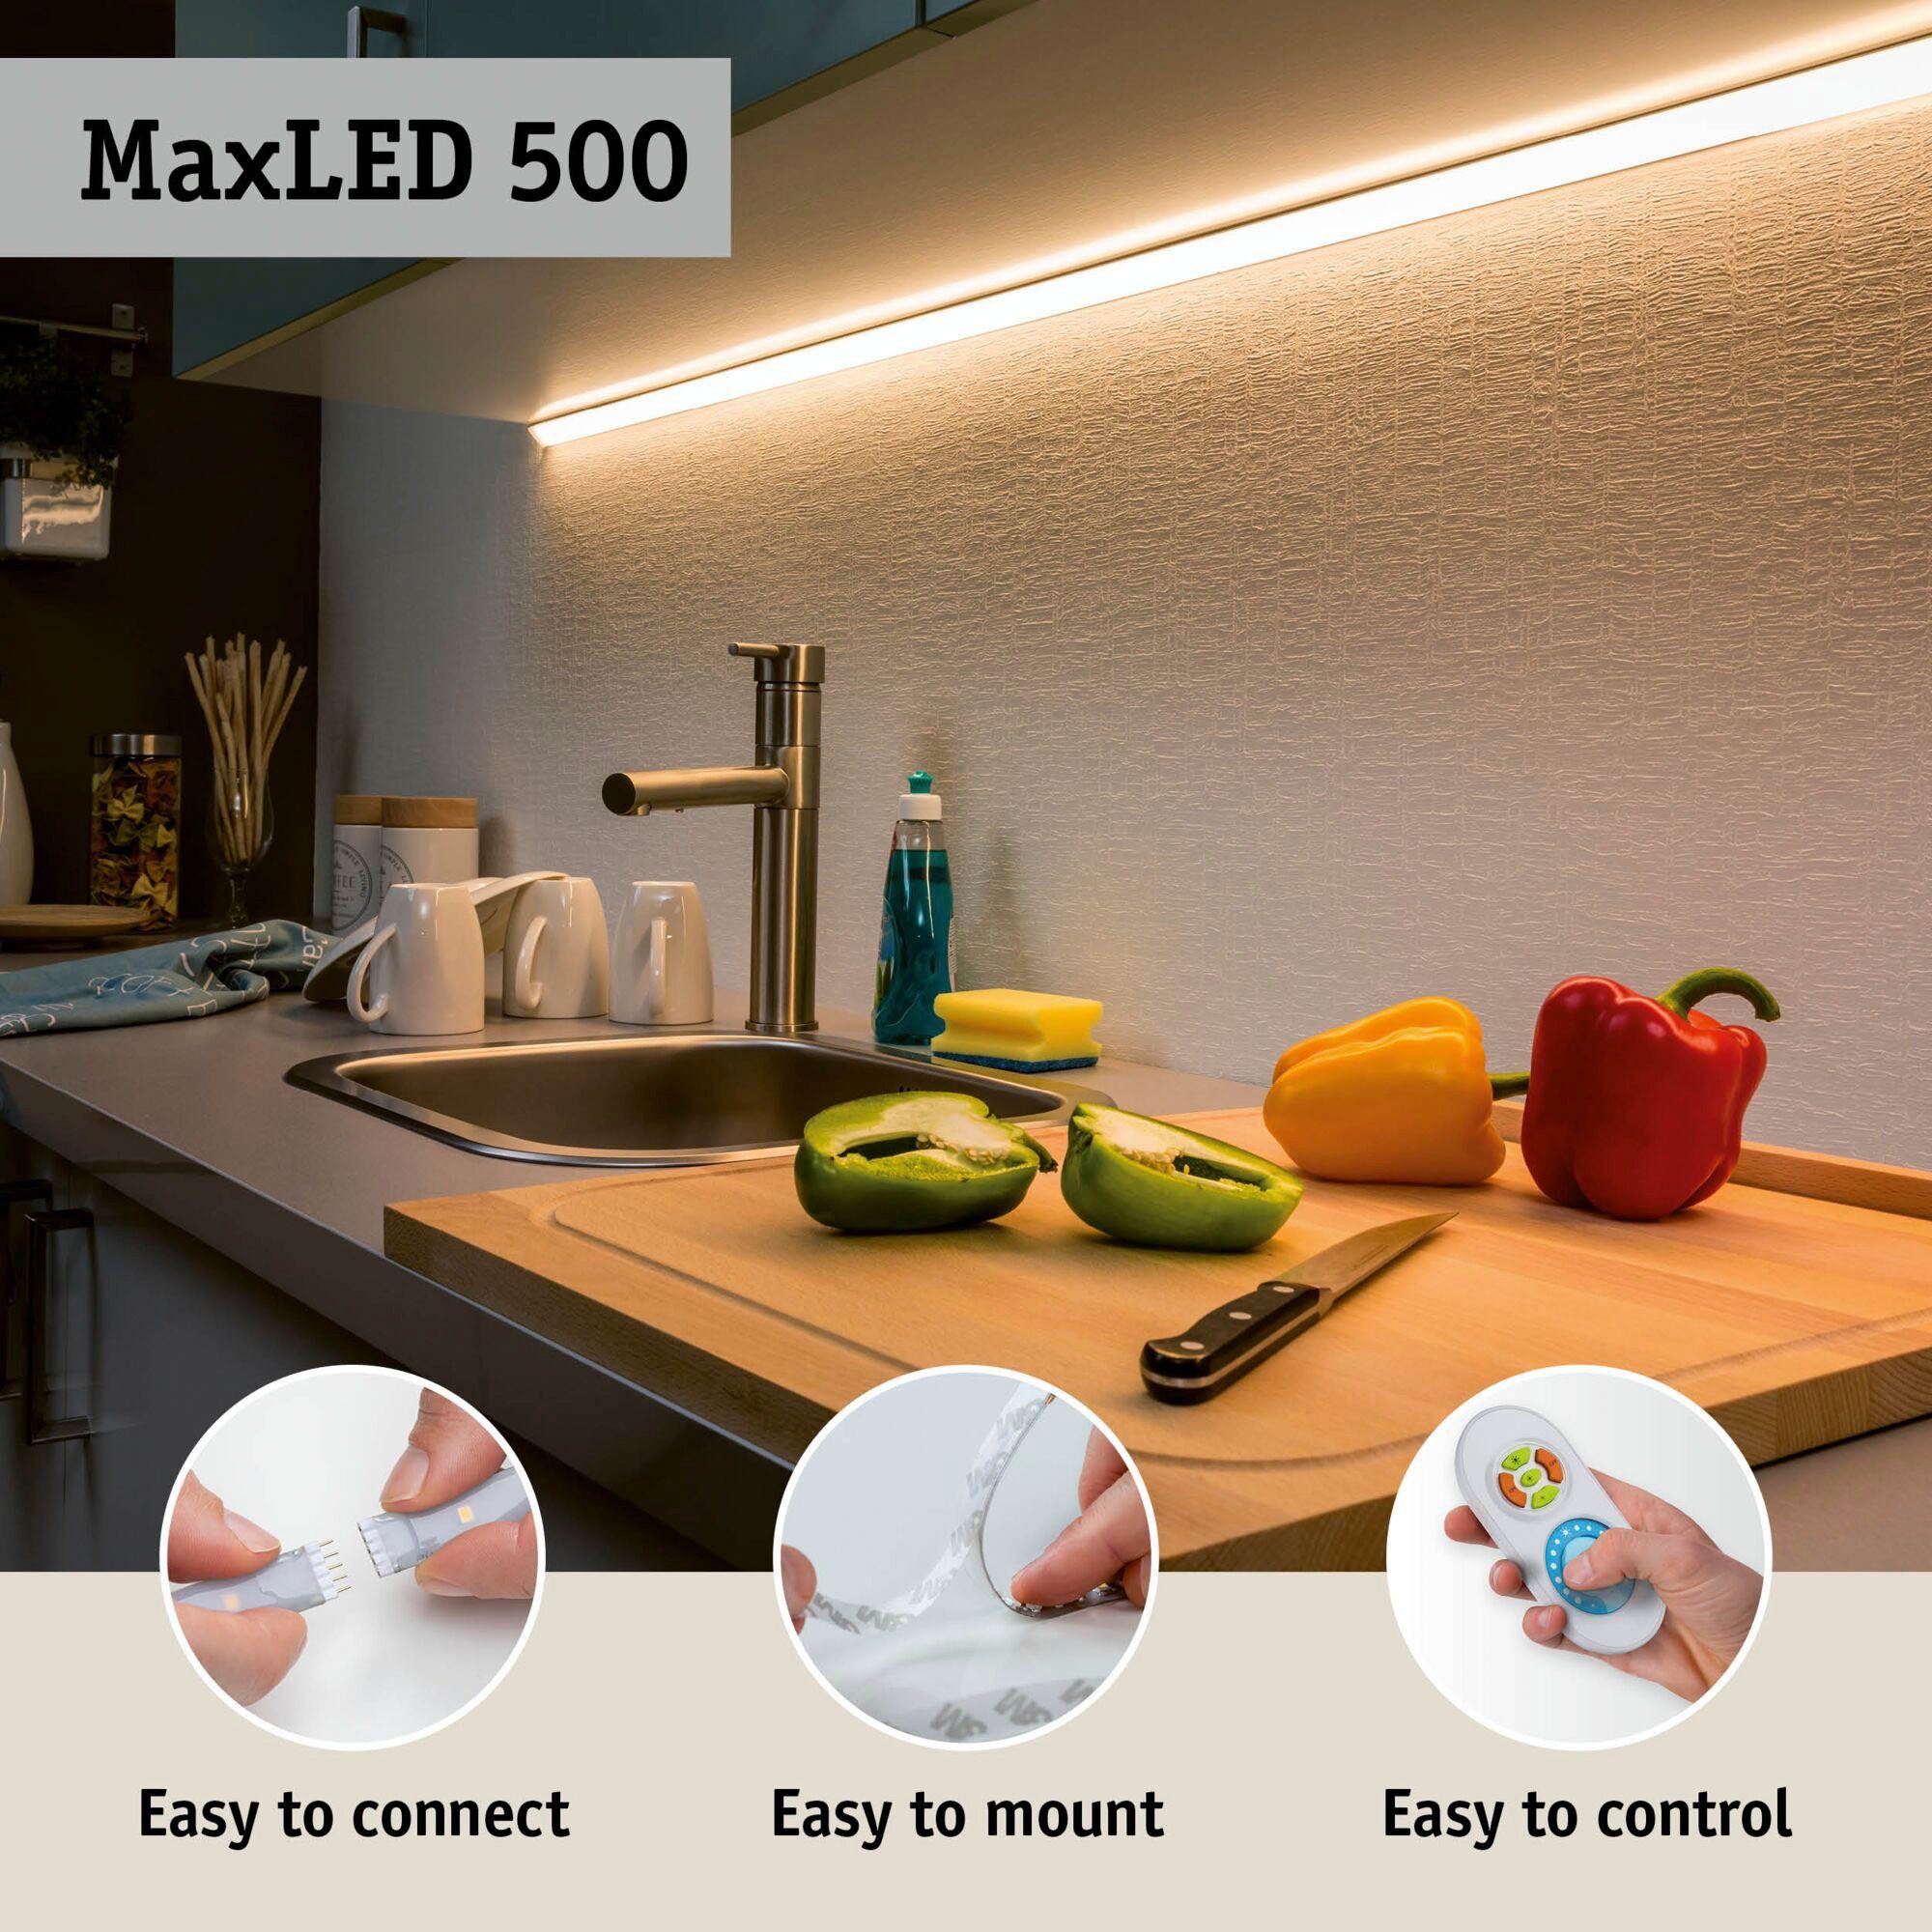 Paulmann LED-Streifen MaxLED 500 Basisset 1650lm 18W 6500K Tageslichtweiß 1-flammig 3m unbeschichtet